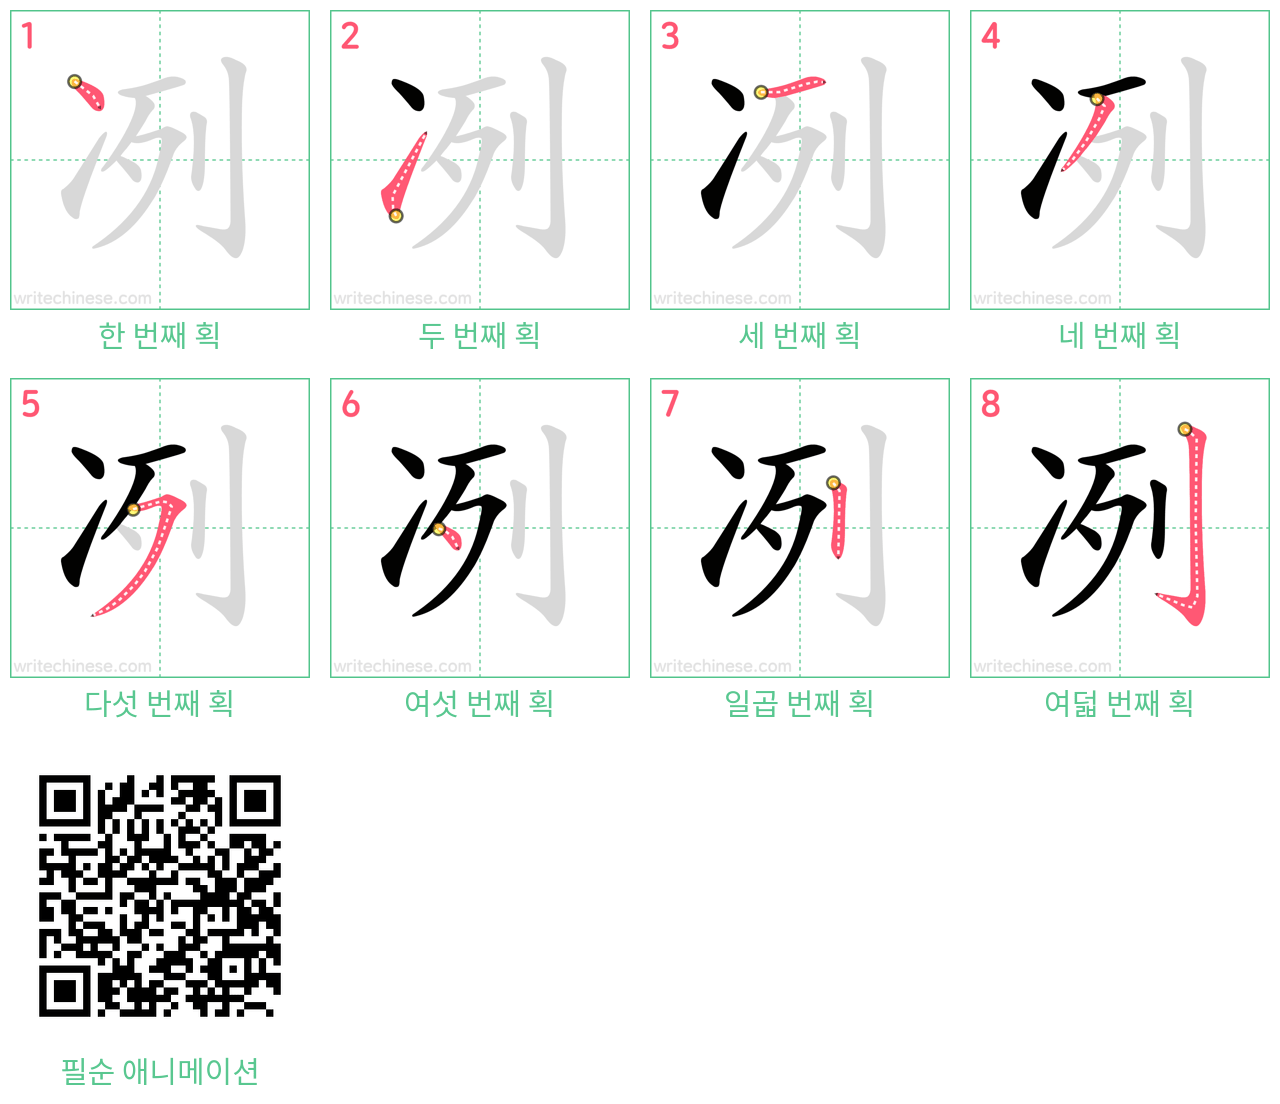 冽 step-by-step stroke order diagrams